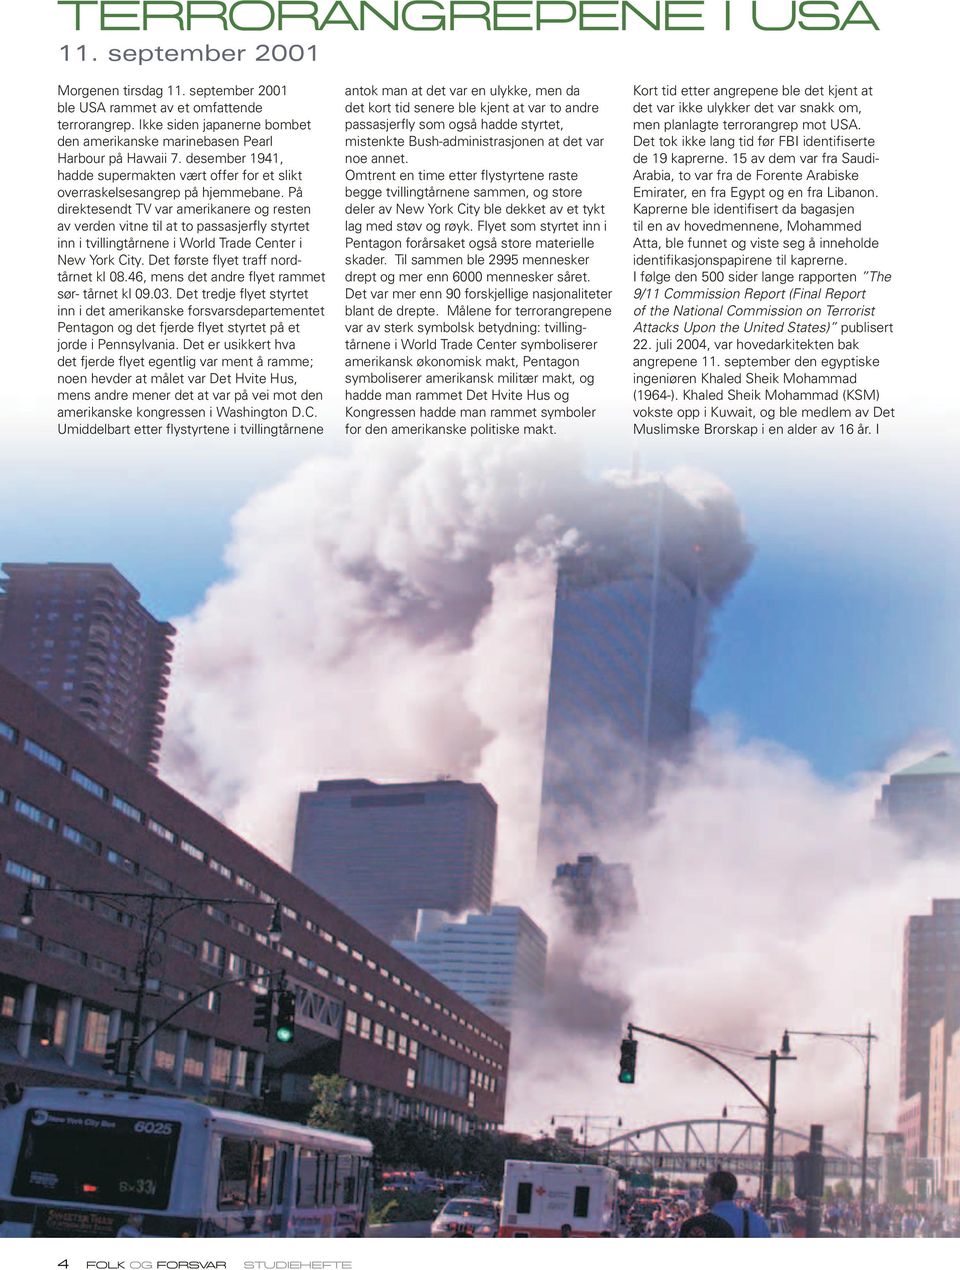 På direktesendt TV var amerikanere og resten av verden vitne til at to passasjerfly styrtet inn i tvillingtårnene i World Trade Center i New York City. Det første flyet traff nordtårnet kl 08.